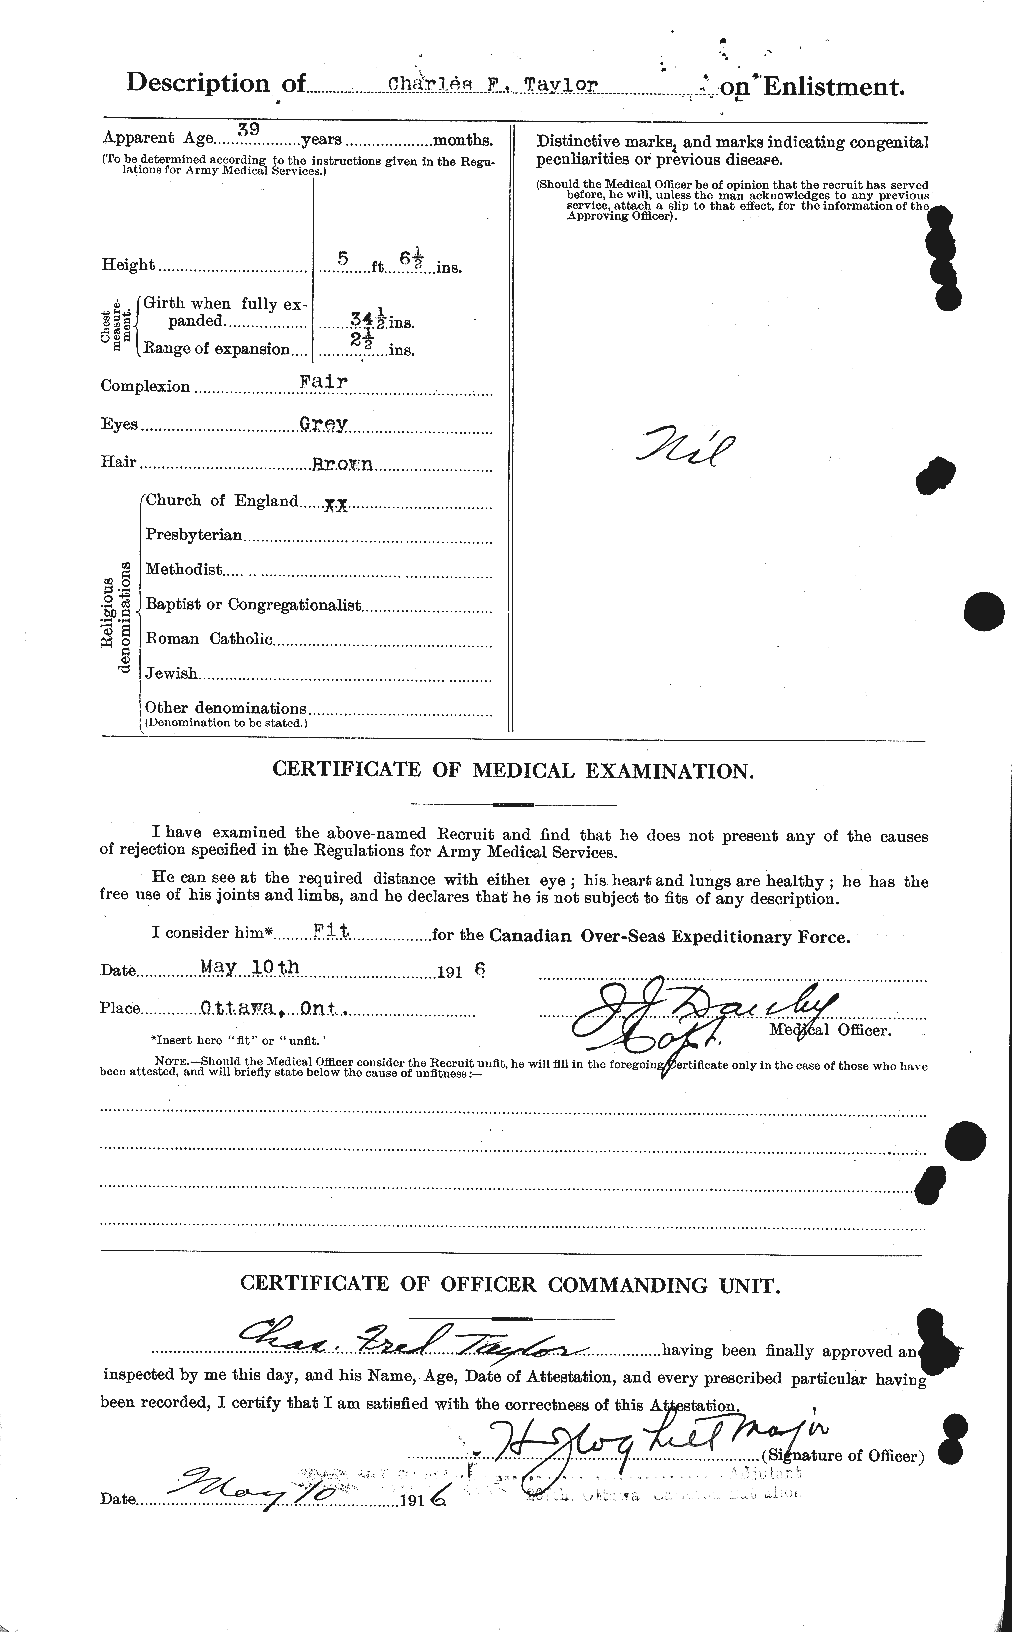 Dossiers du Personnel de la Première Guerre mondiale - CEC 626841b